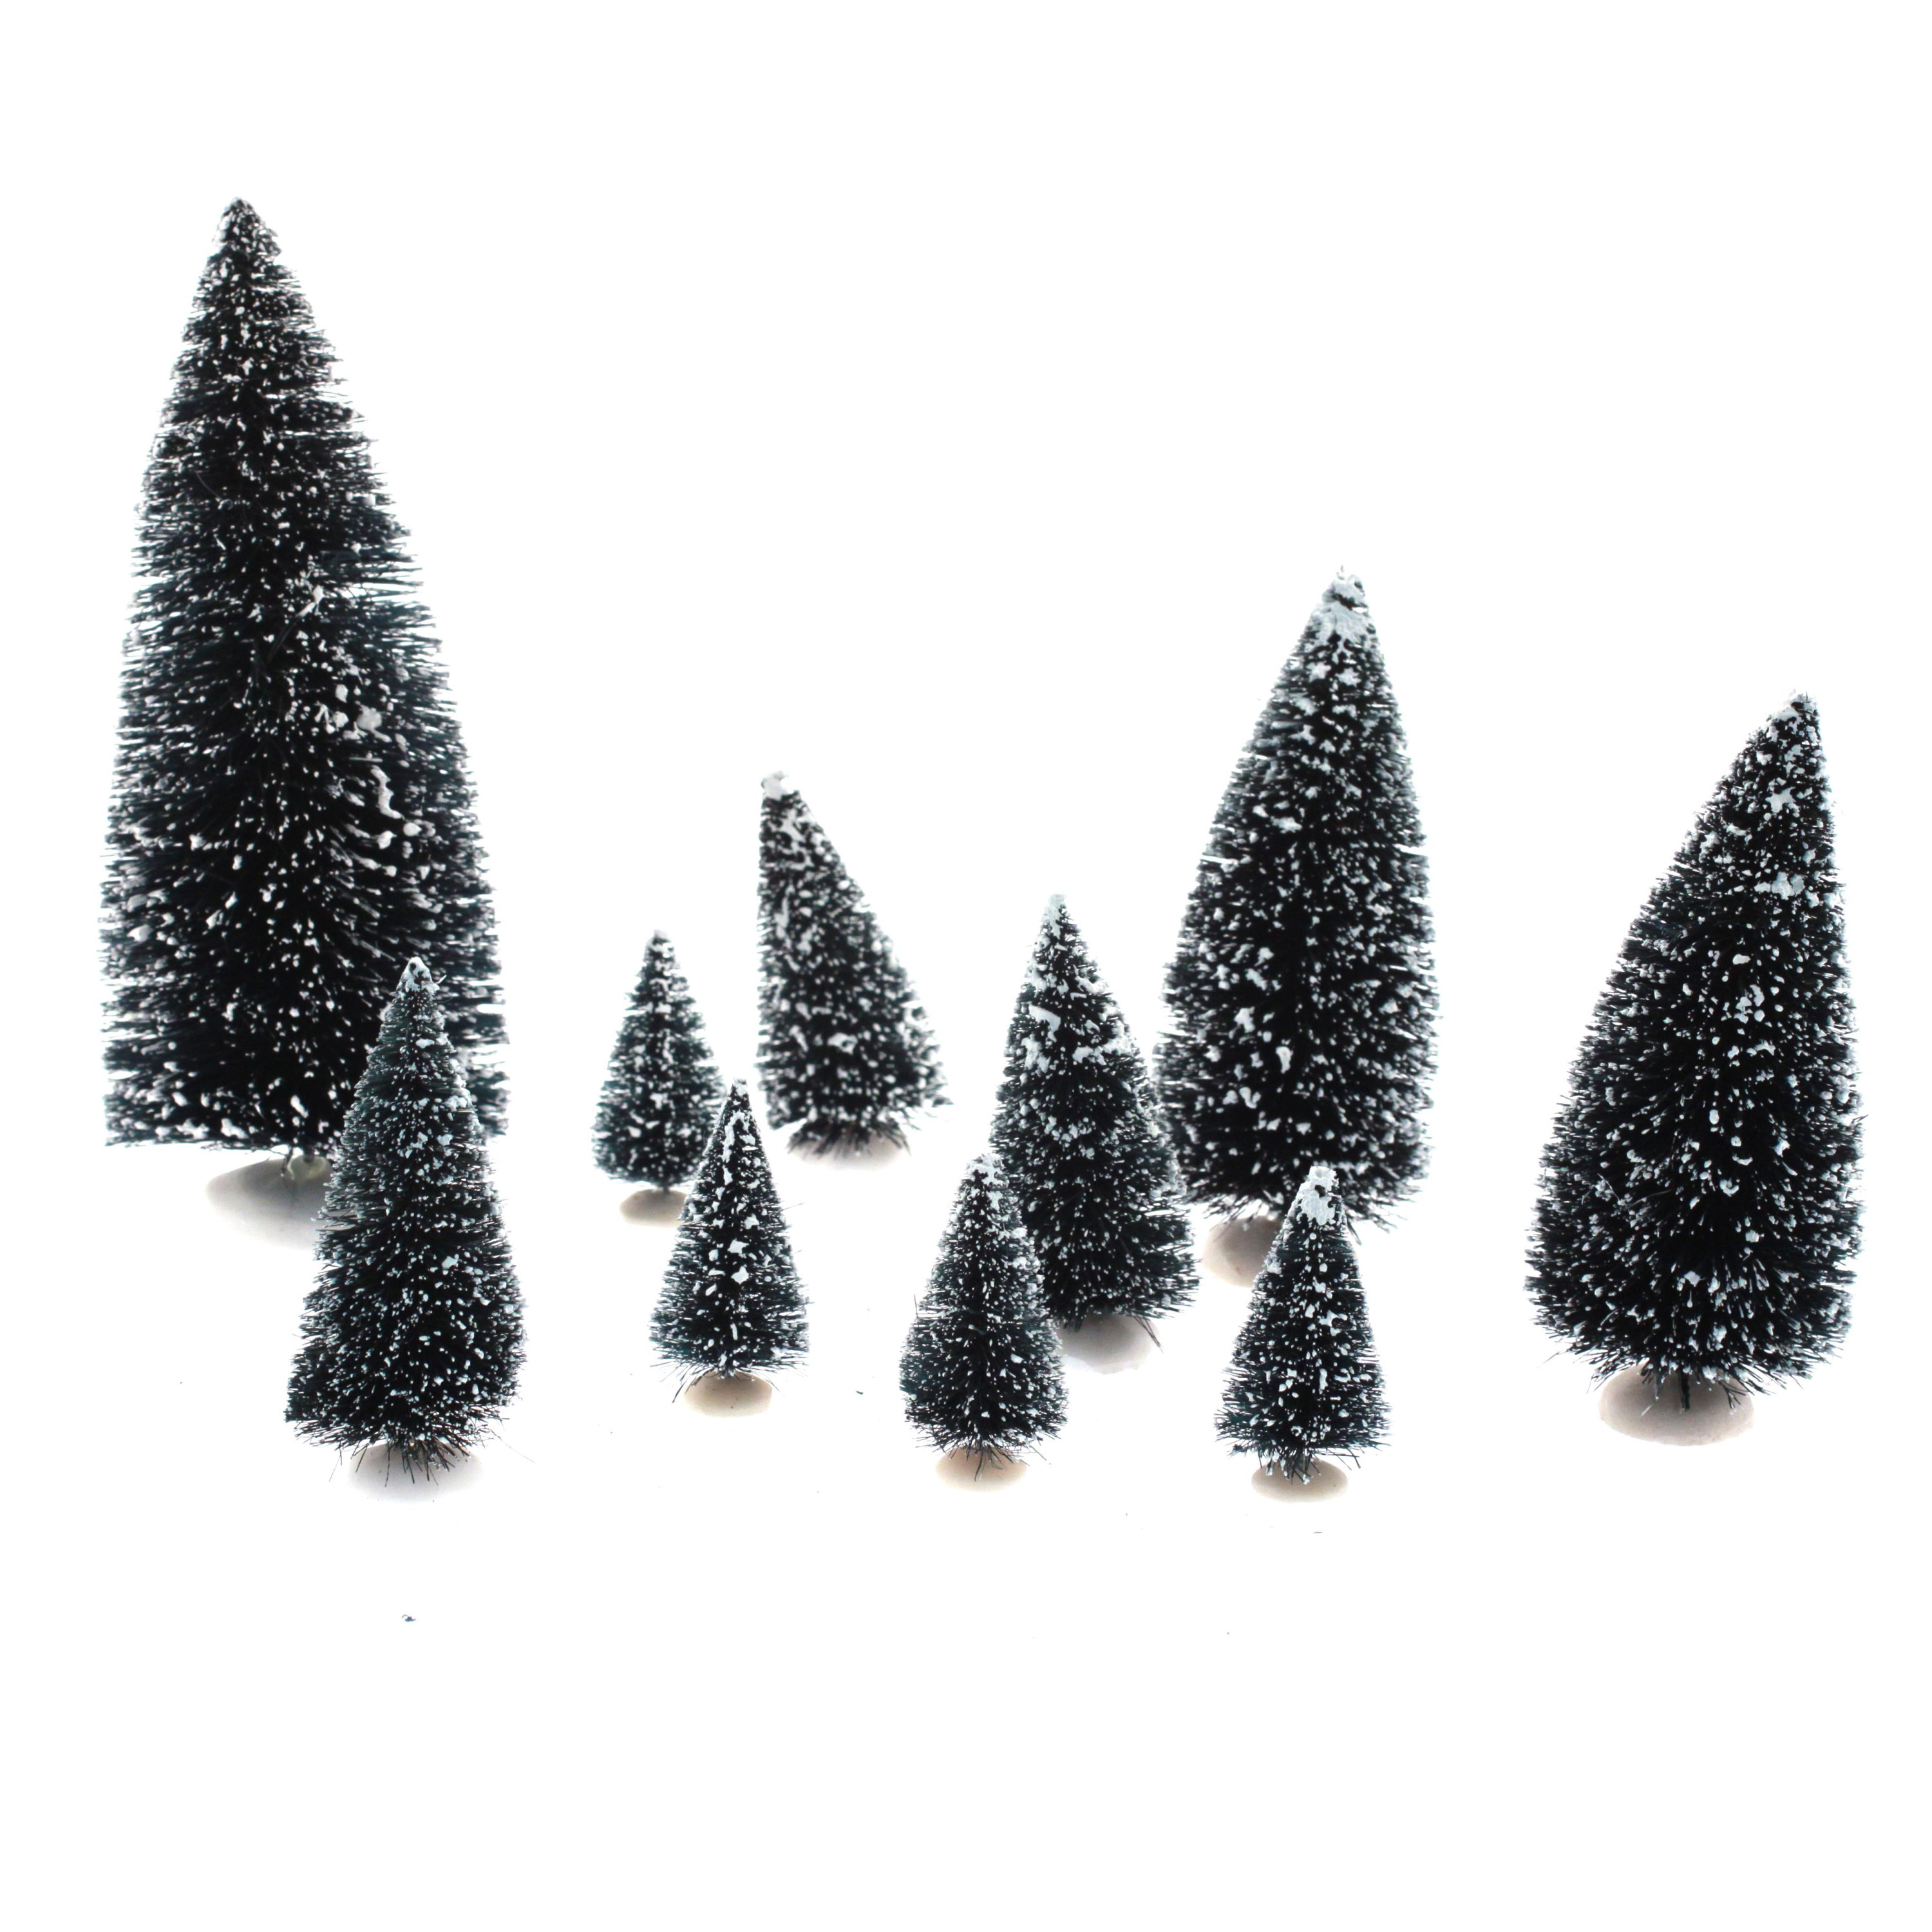 Feeric lights and christmas kerstdorp miniatuur boompjes 10x stuks